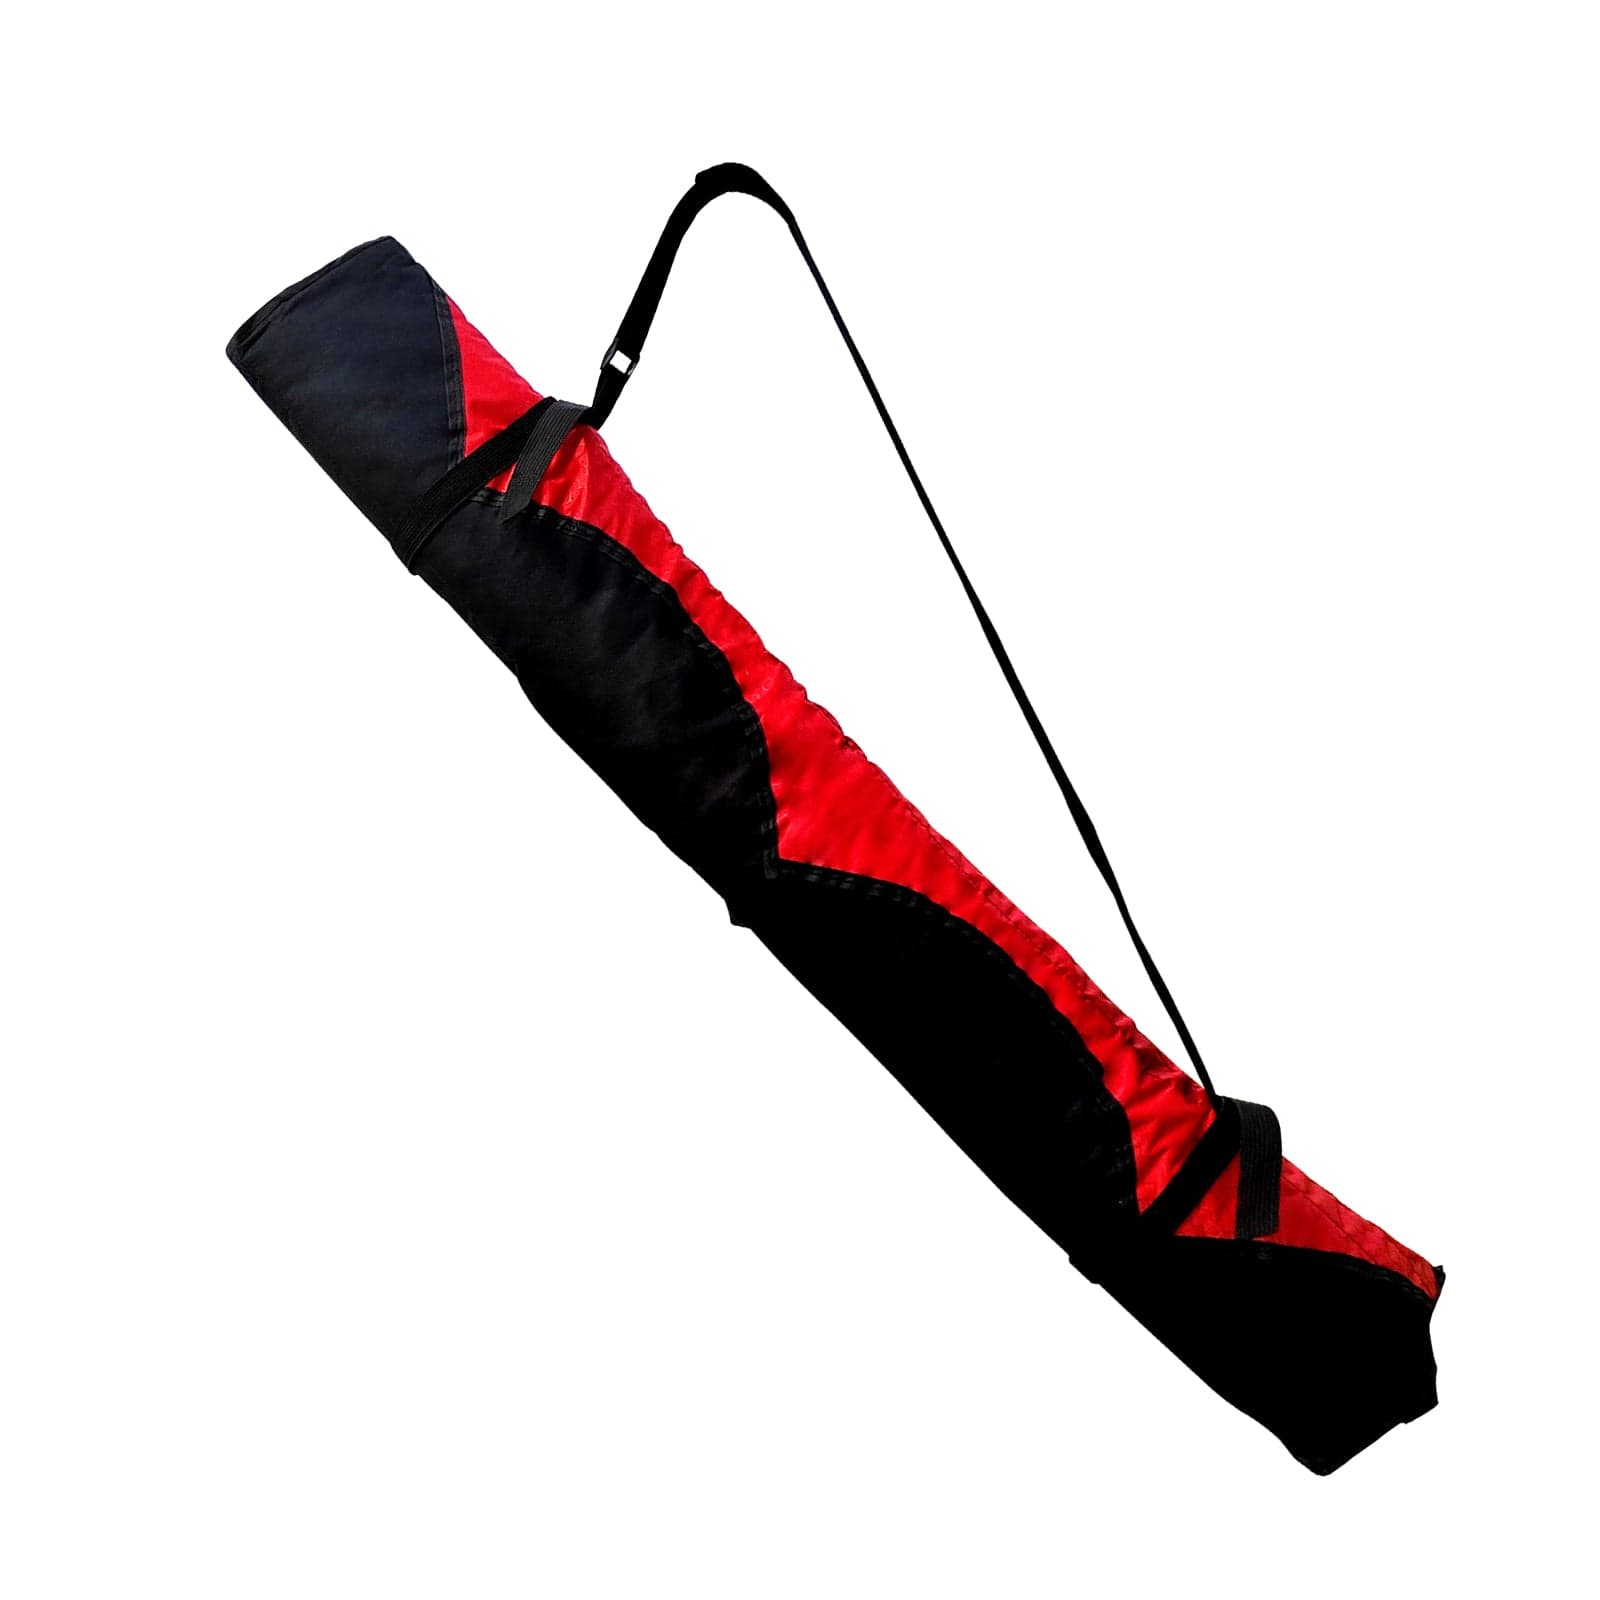 Simxkai Large Kite Bag for Single-line & Stunt Kites – Mint's